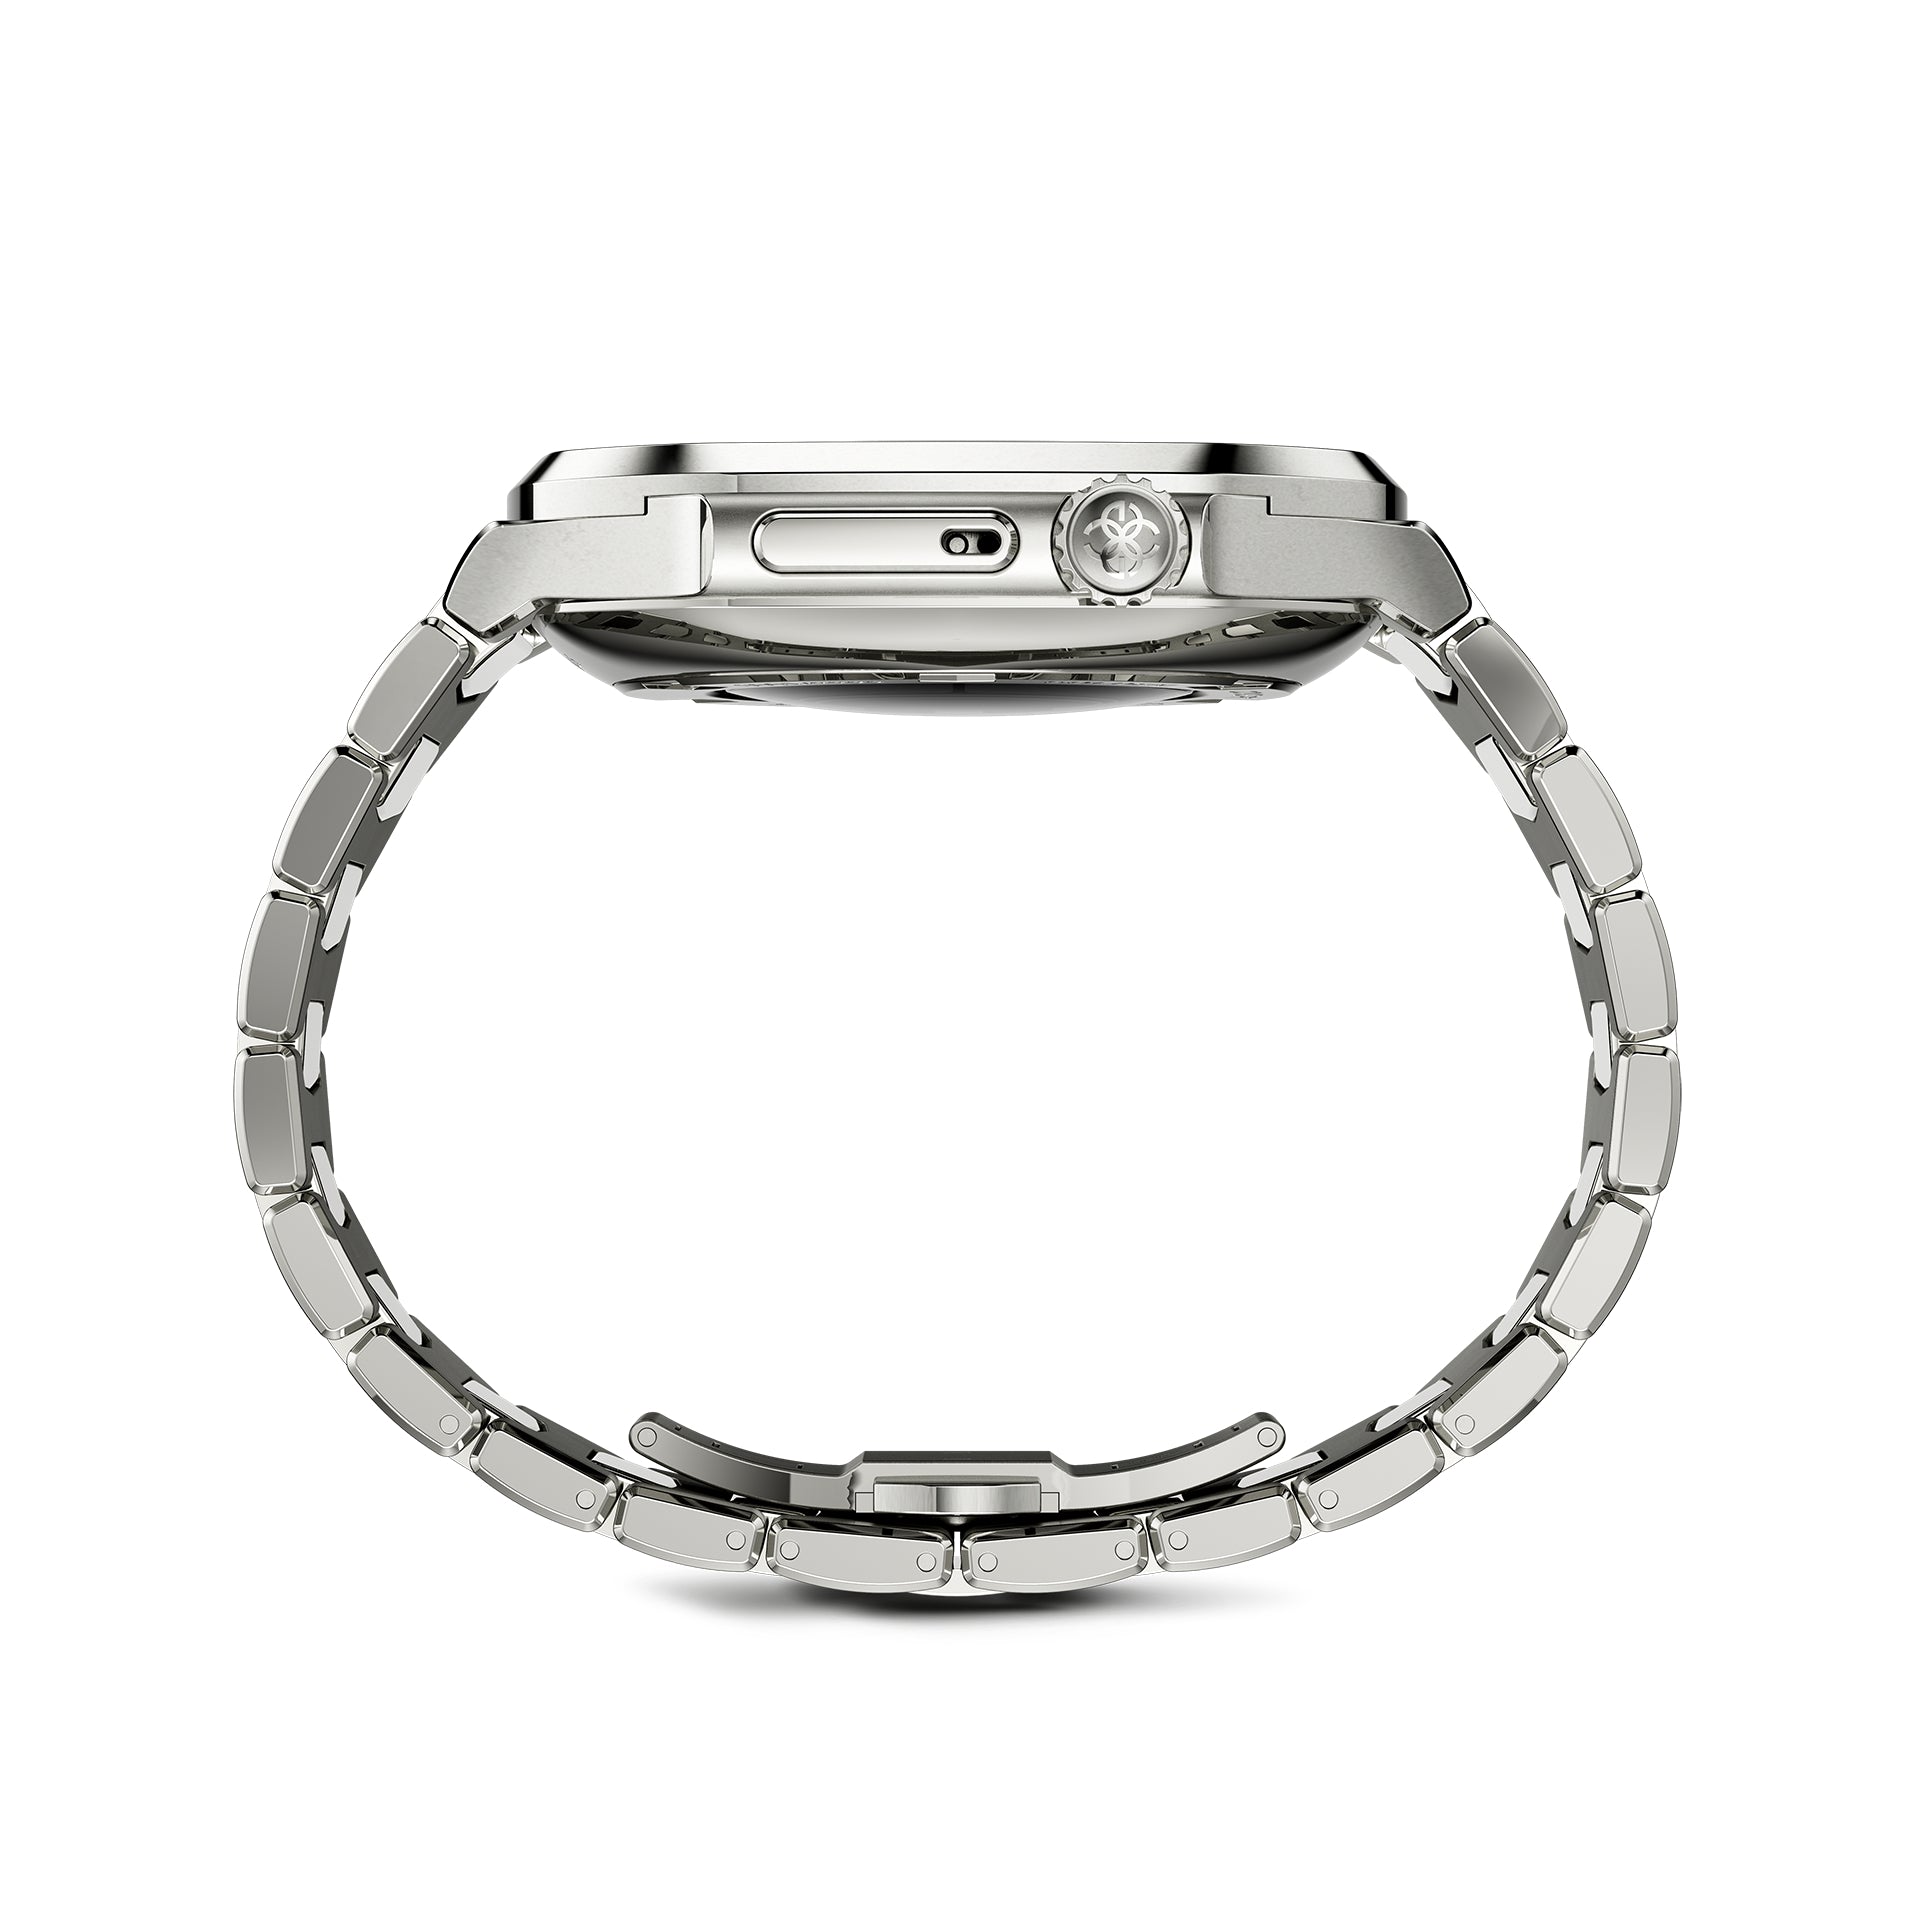 Apple Watch 7 - 9 Case - RO45 - Silver